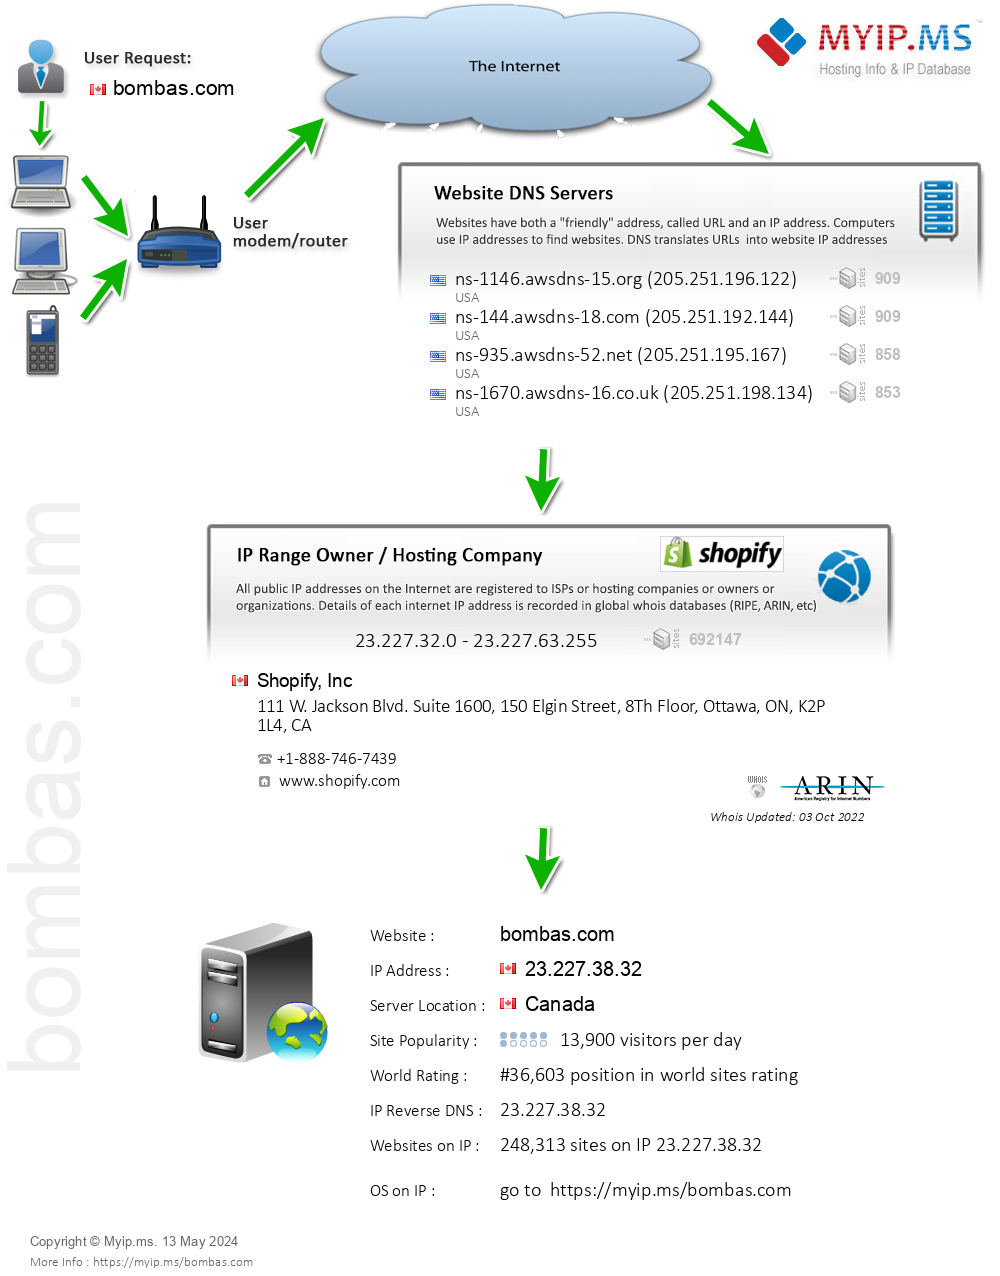 Bombas.com - Website Hosting Visual IP Diagram